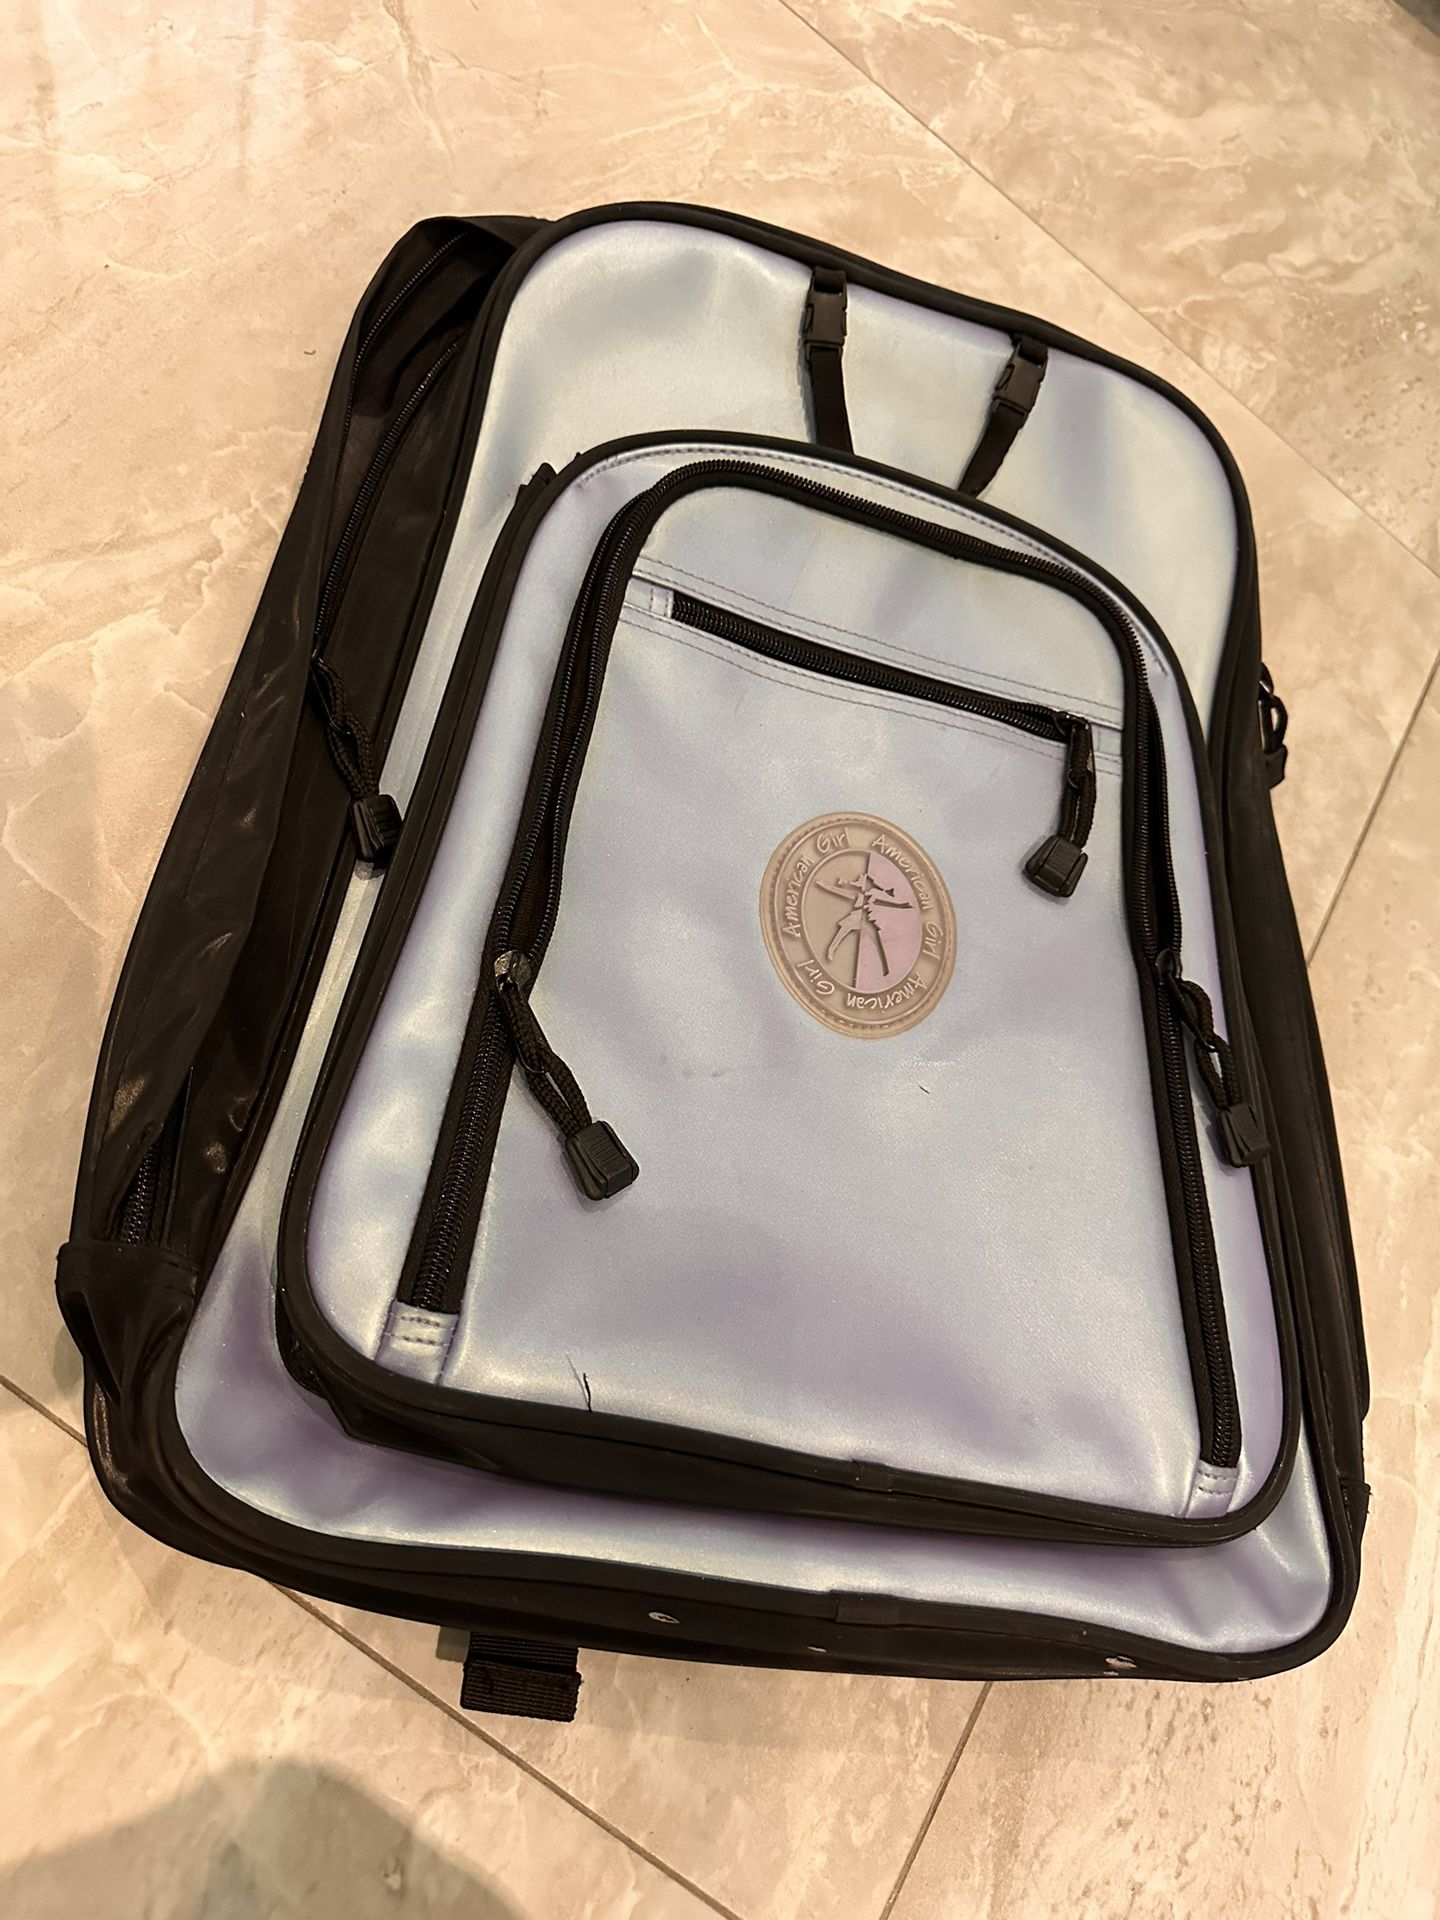 American Girl Travel Backpack Bookbag Doll Carrier Travel Bag